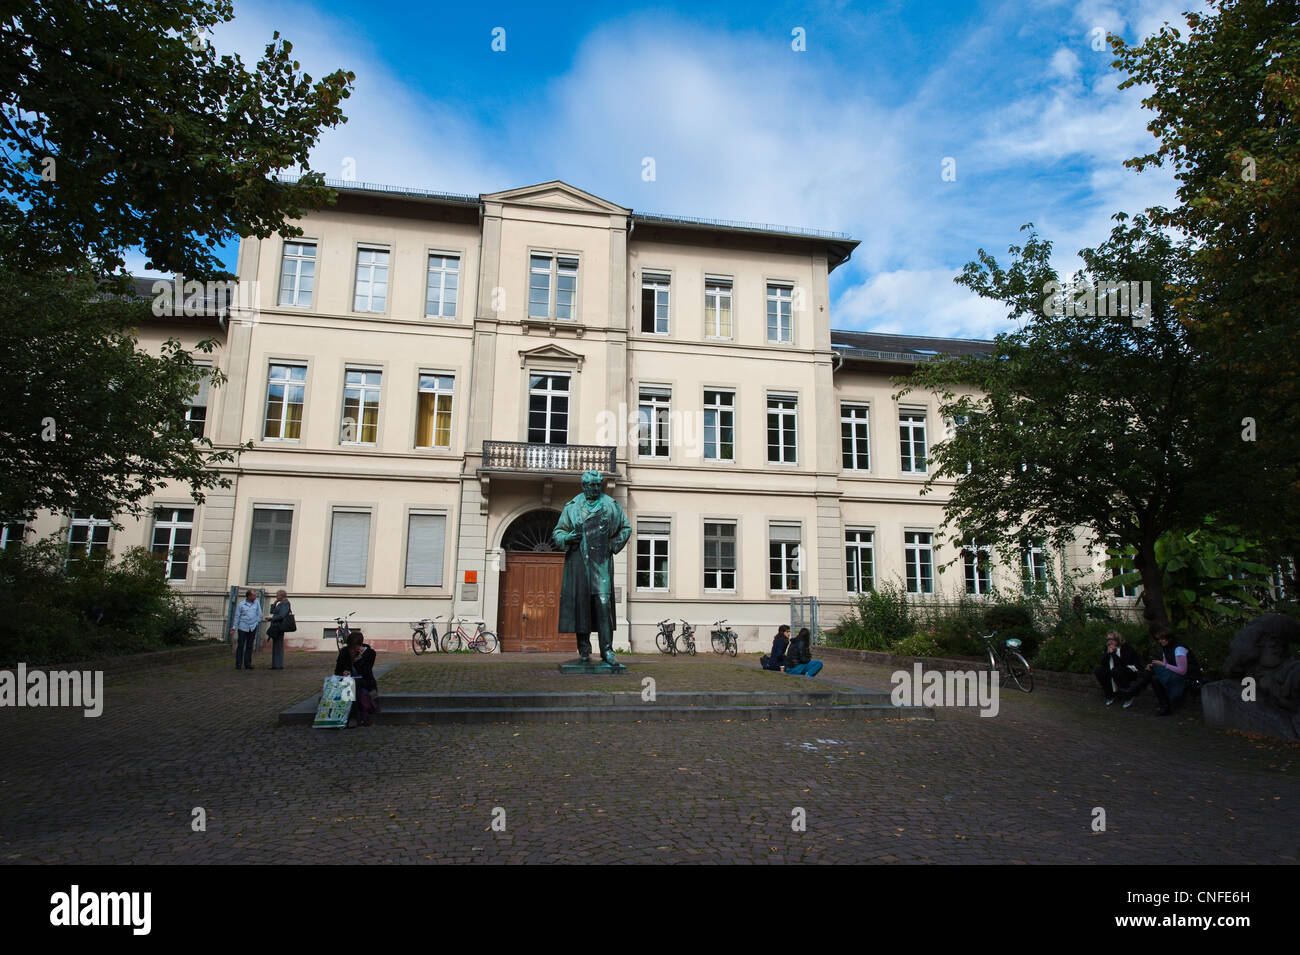 Statue of Robert Wilhelm Bunsen in front of the Anatomieplatz in Old Town Heidelberg, Germany. Stock Photo